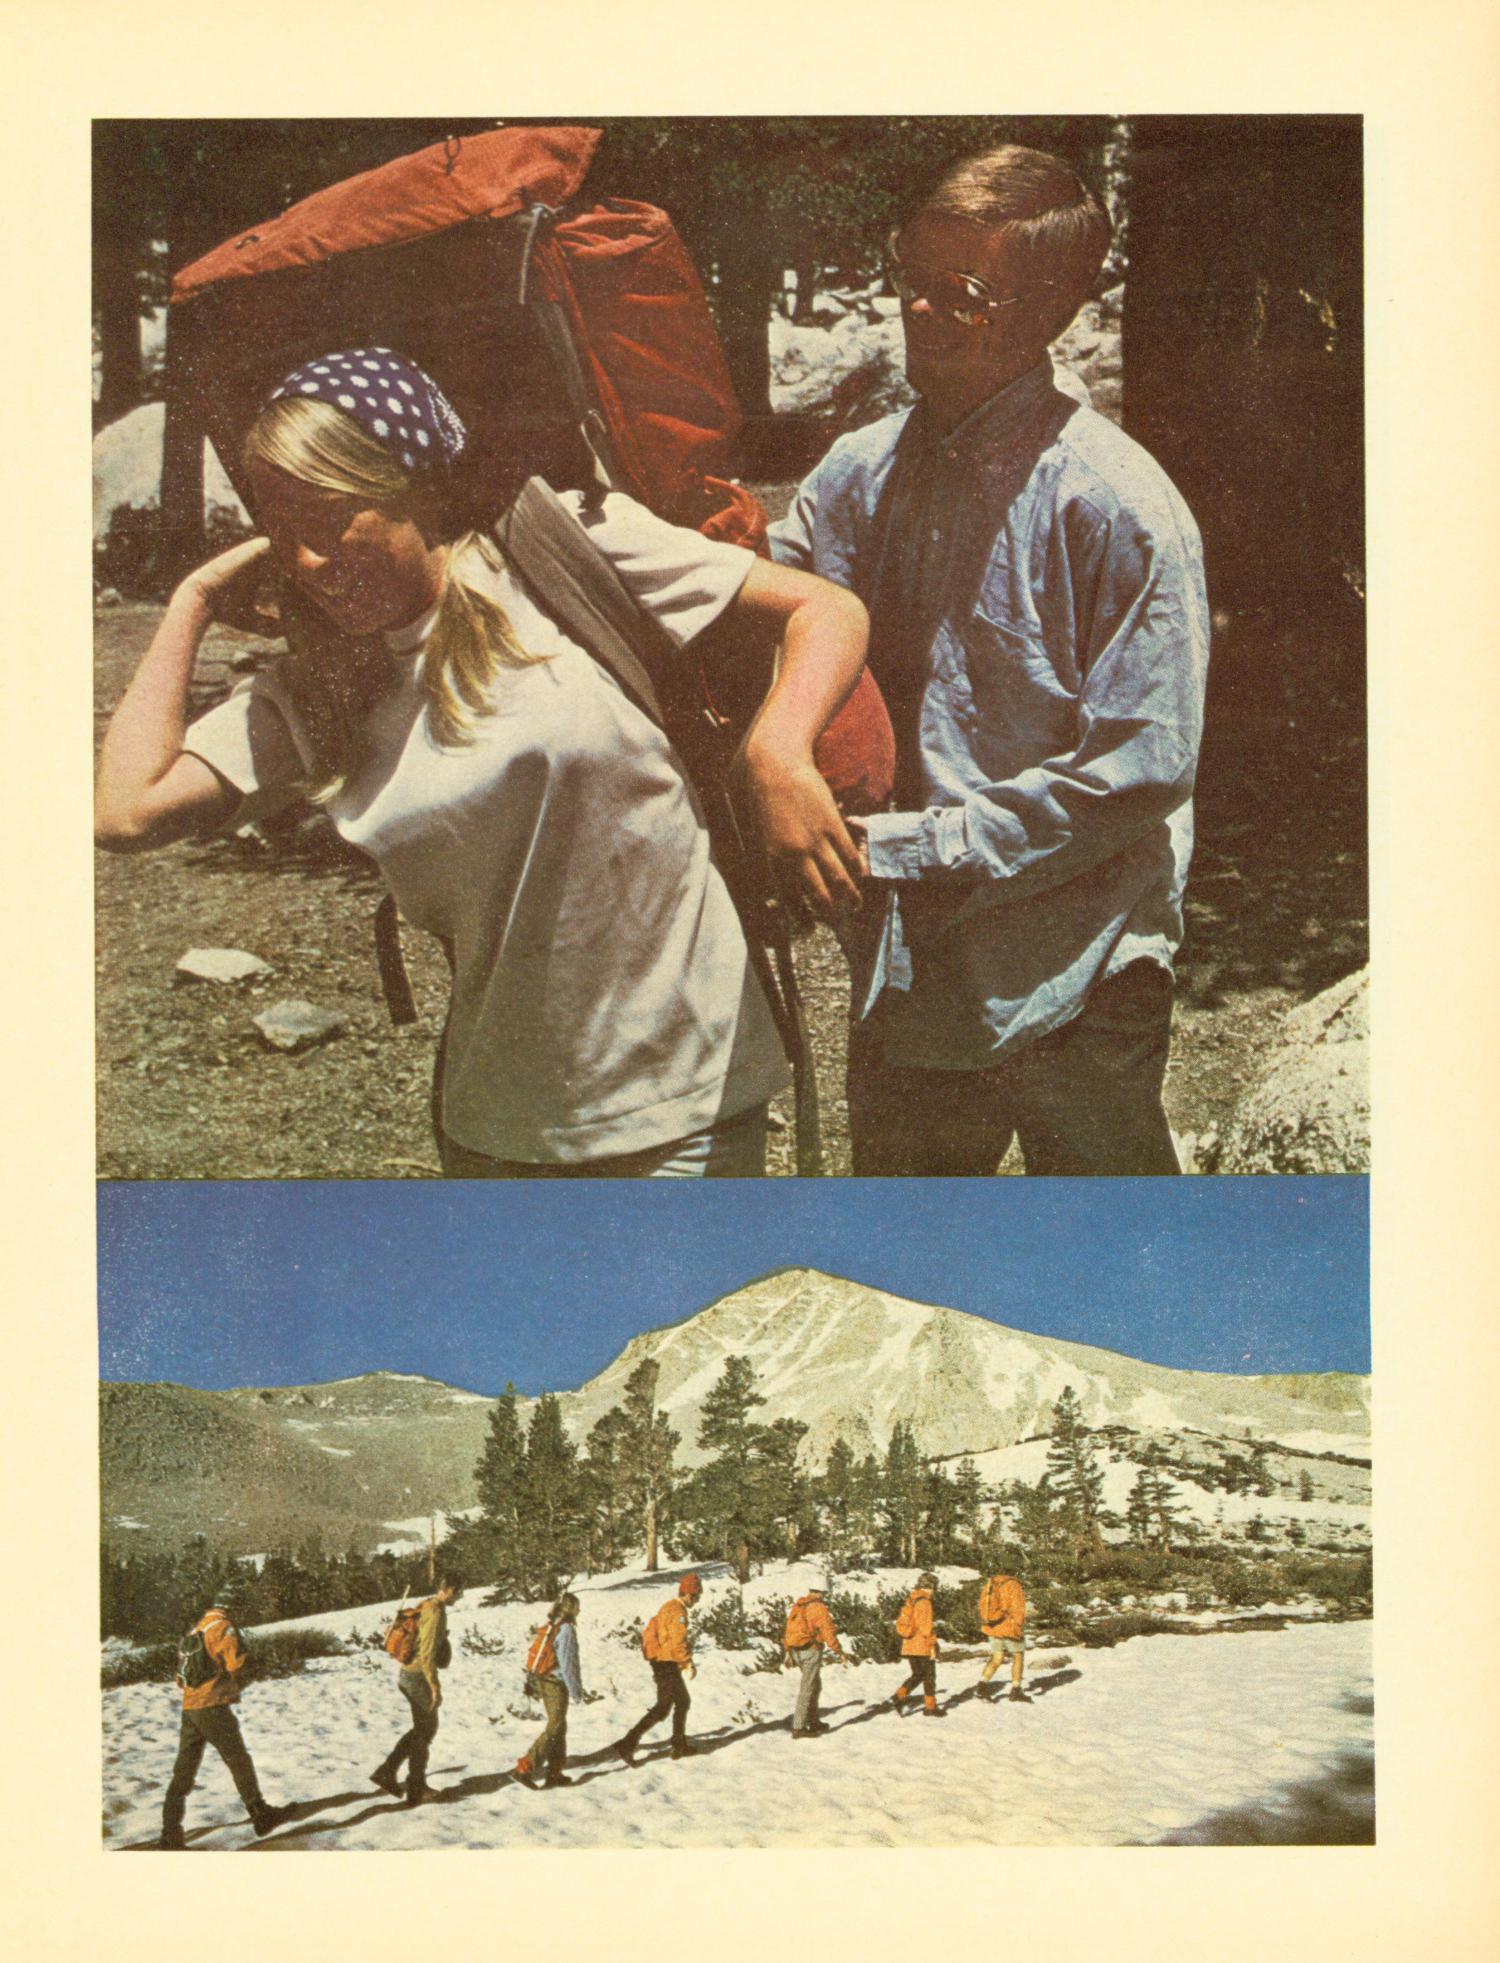 Scouting, Volume 58, Number 6, November-December 1970
                                                
                                                    17
                                                